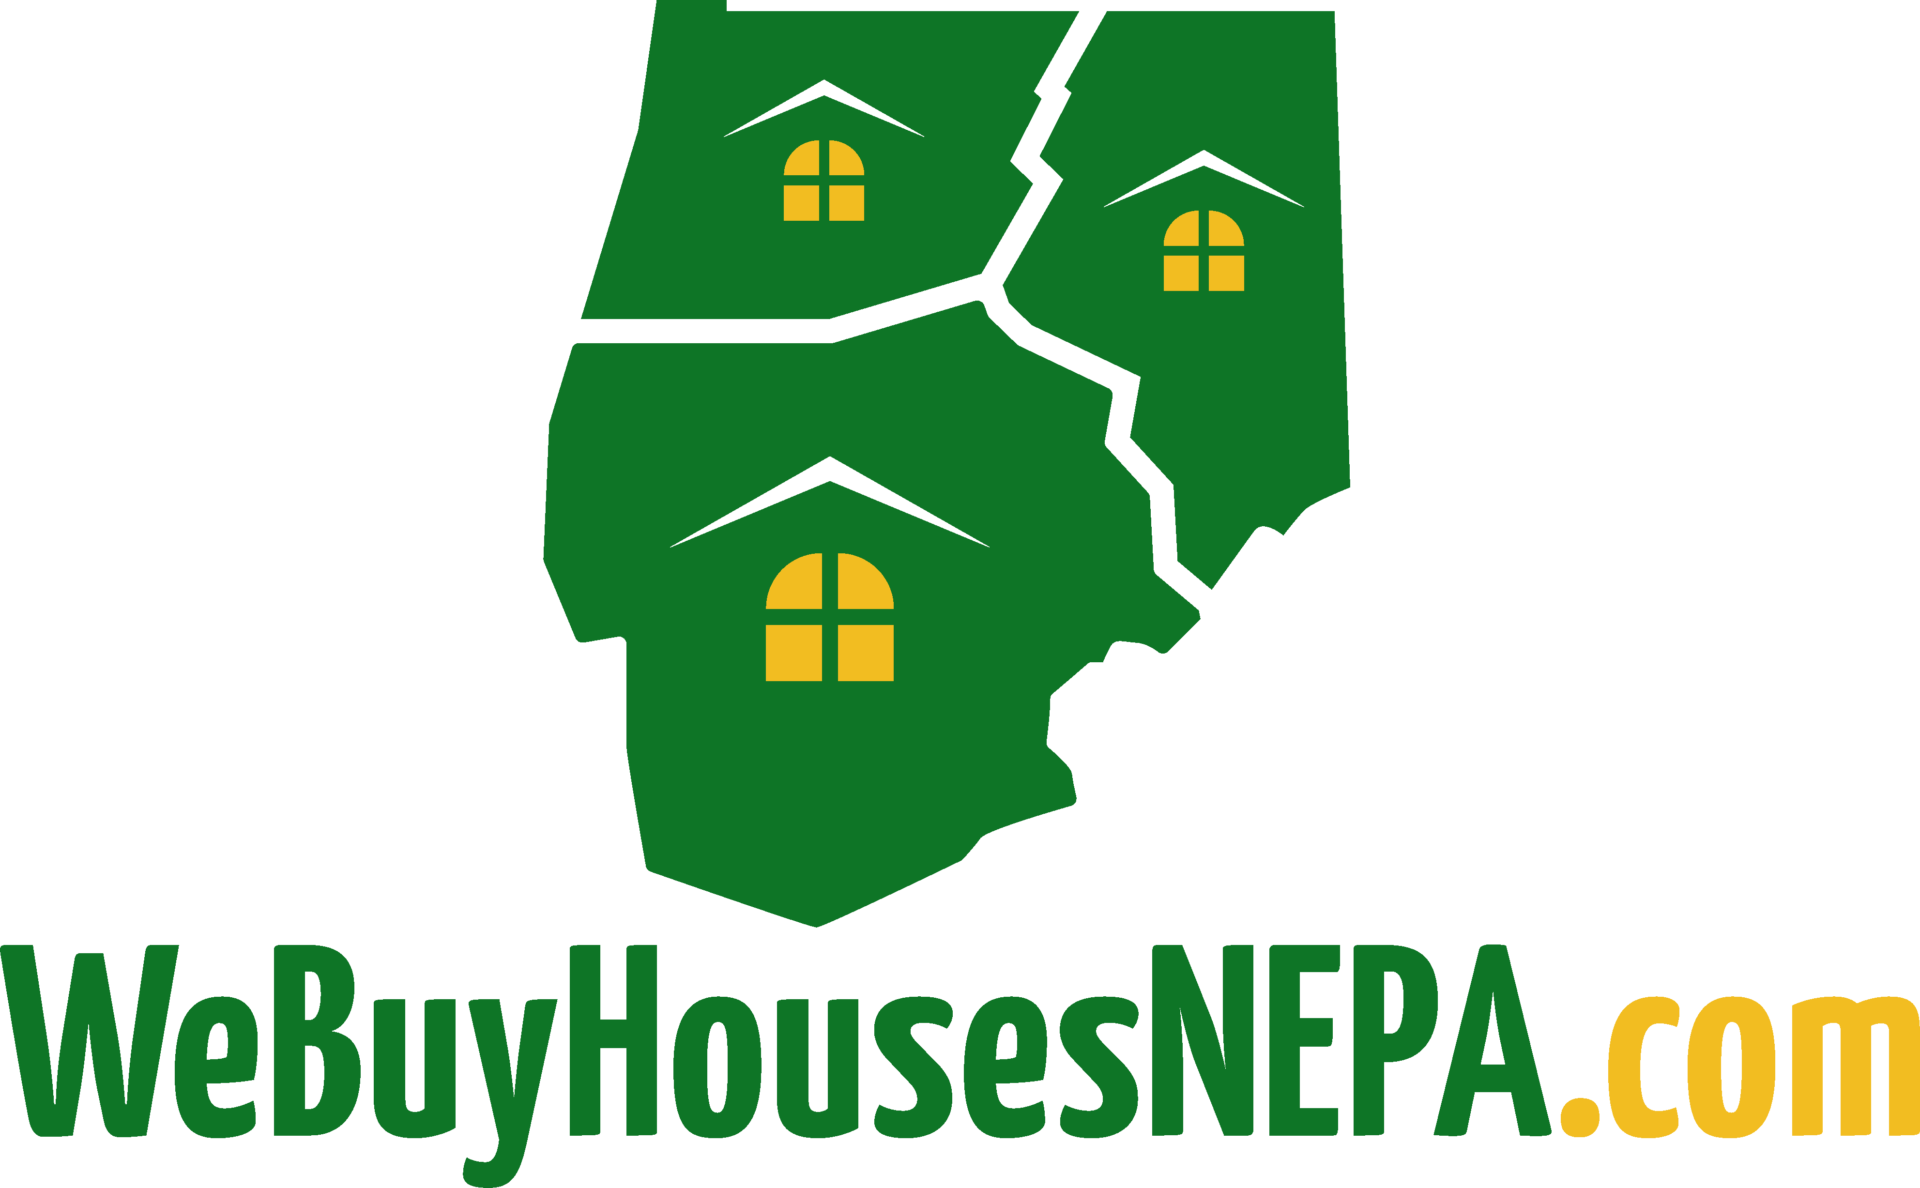 We Buy Houses NEPA – Scranton / Wilkes-Barre logo